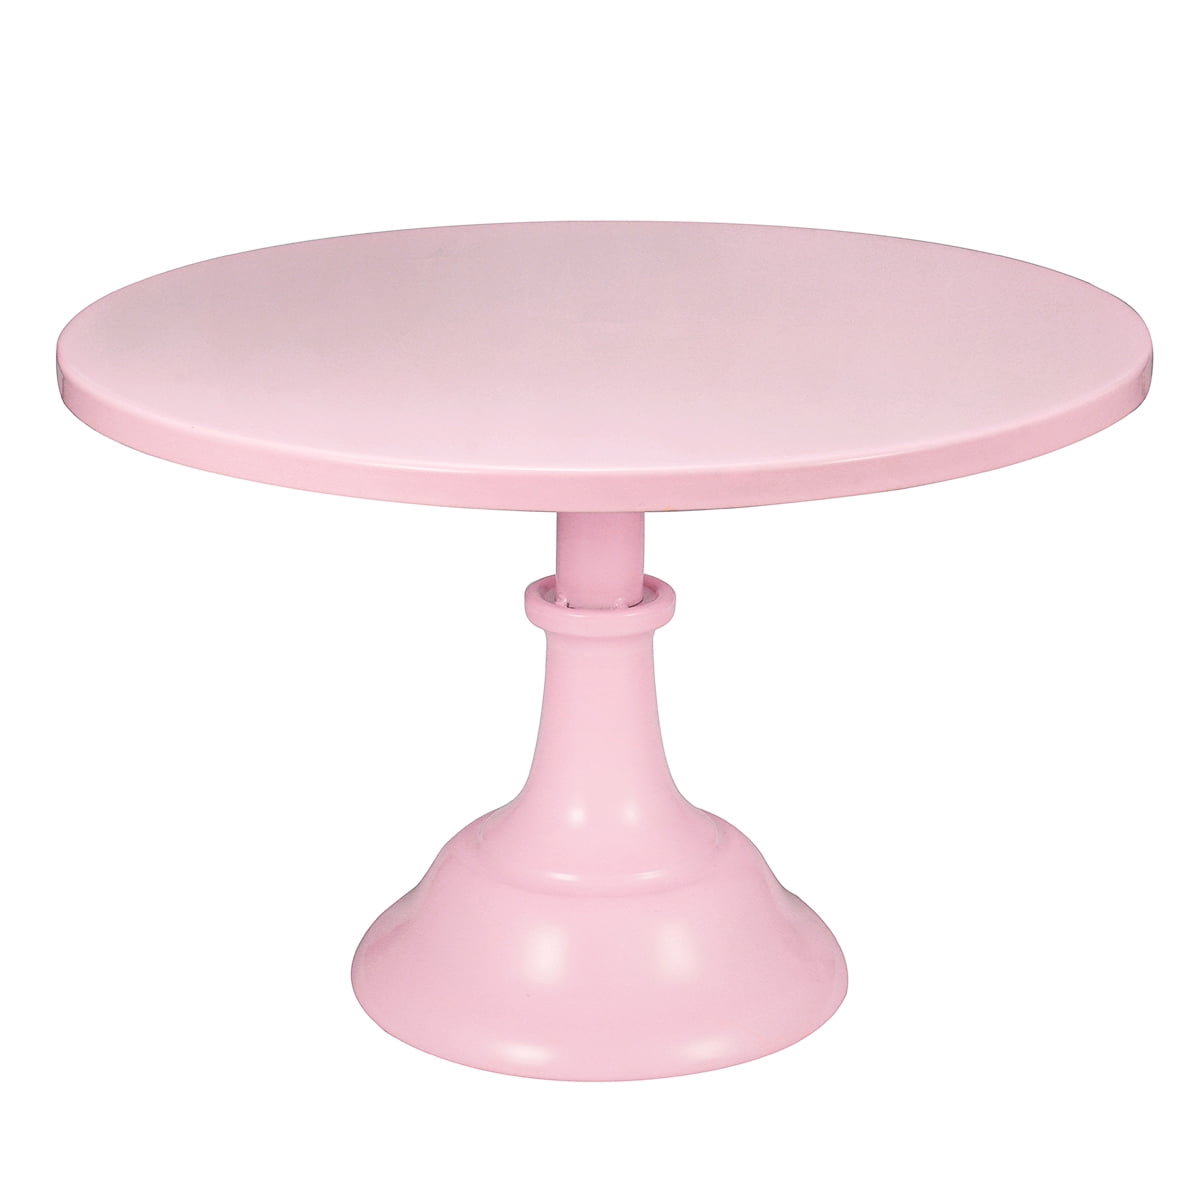 8Inch Mental Round Cake Stand Pedestal White Pink Dessert Holder Wedding 